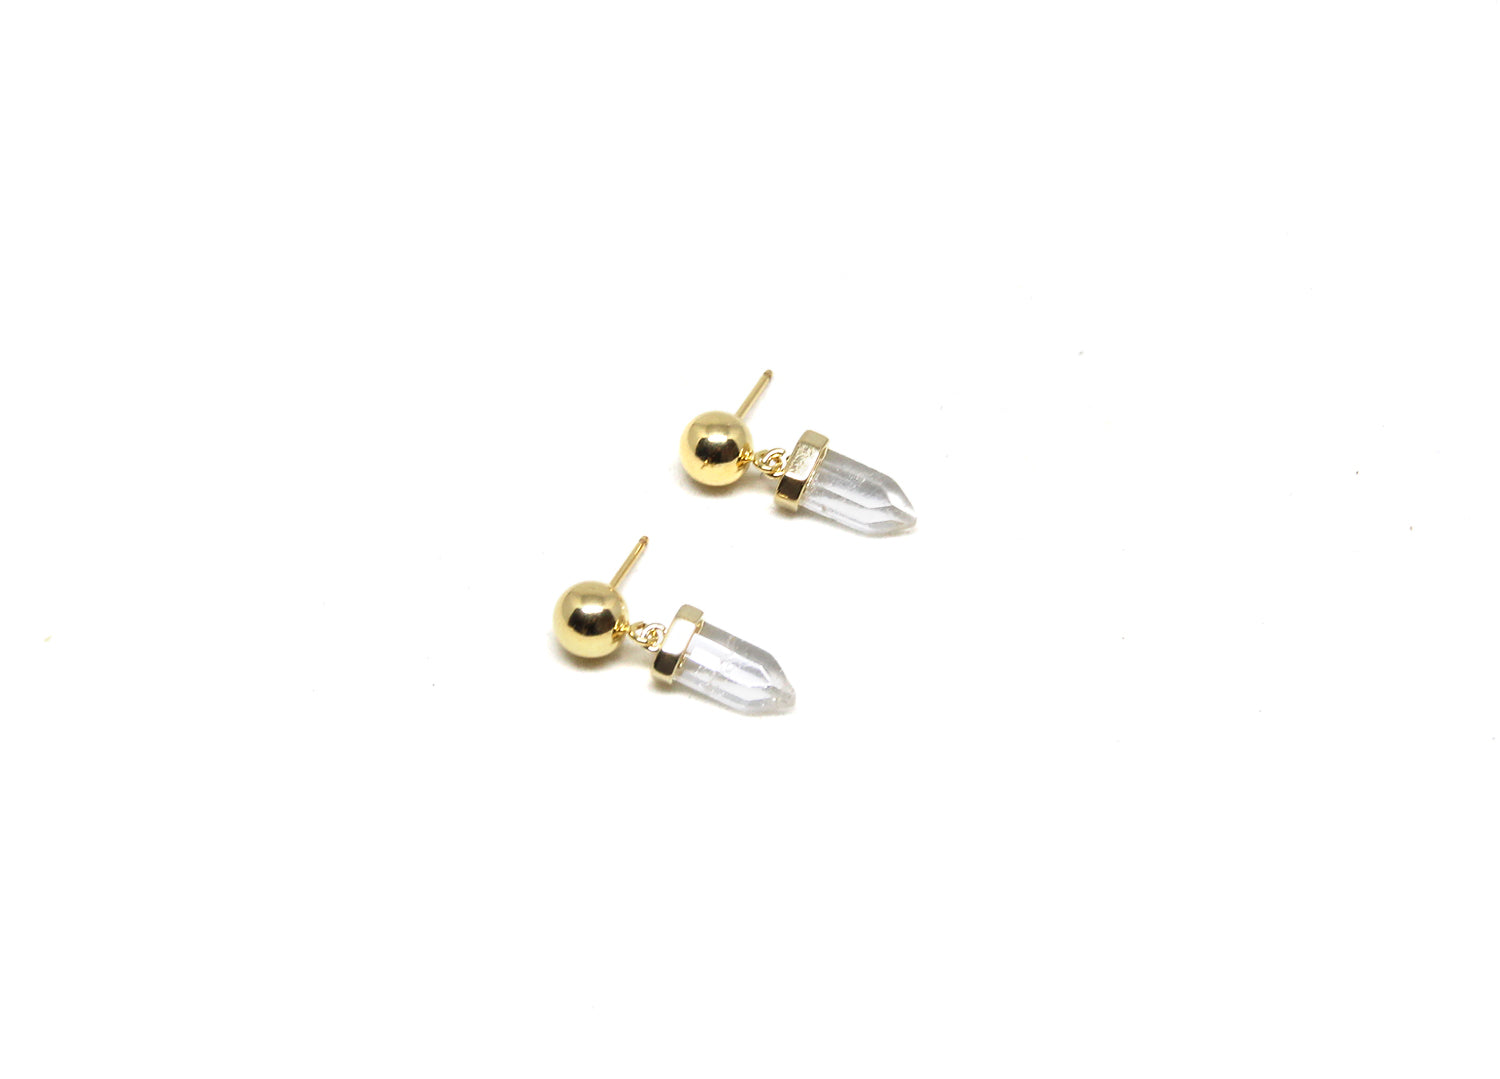 llayers-jewelry-quartz-crystal-gold-earrings-brooklyn-newyork-F6